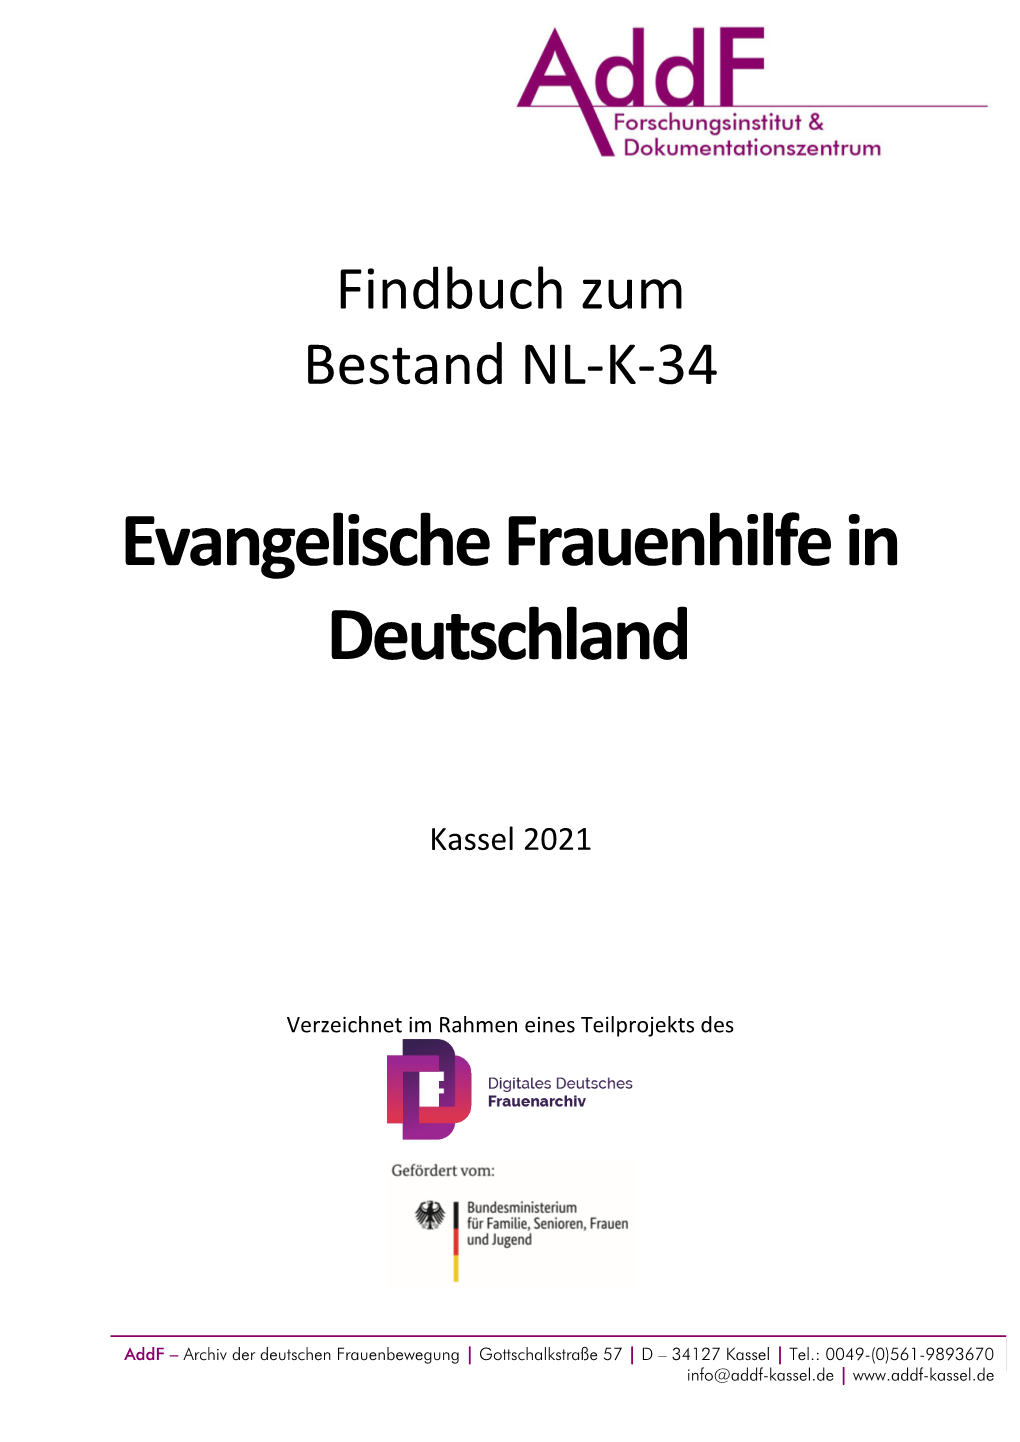 Evangelische Frauenhilfe in Deutschland